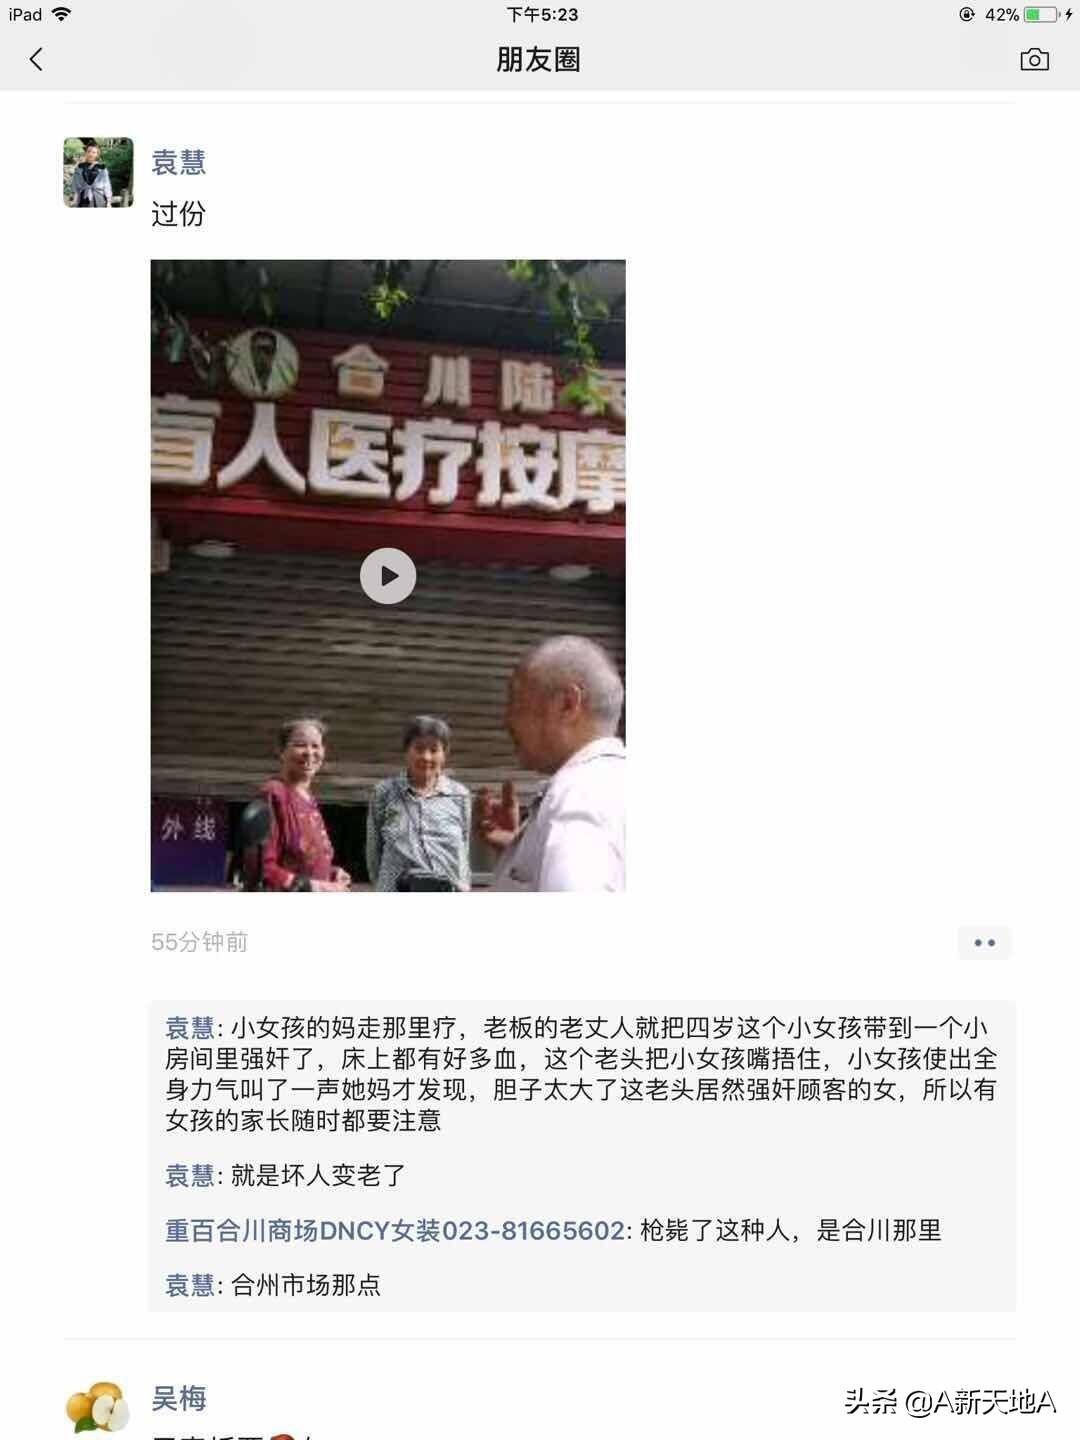 29秒 重庆合川一盲人按摩店发生强奸幼女案 警方 正在调查 大陆 国内新闻 新闻 齐鲁网